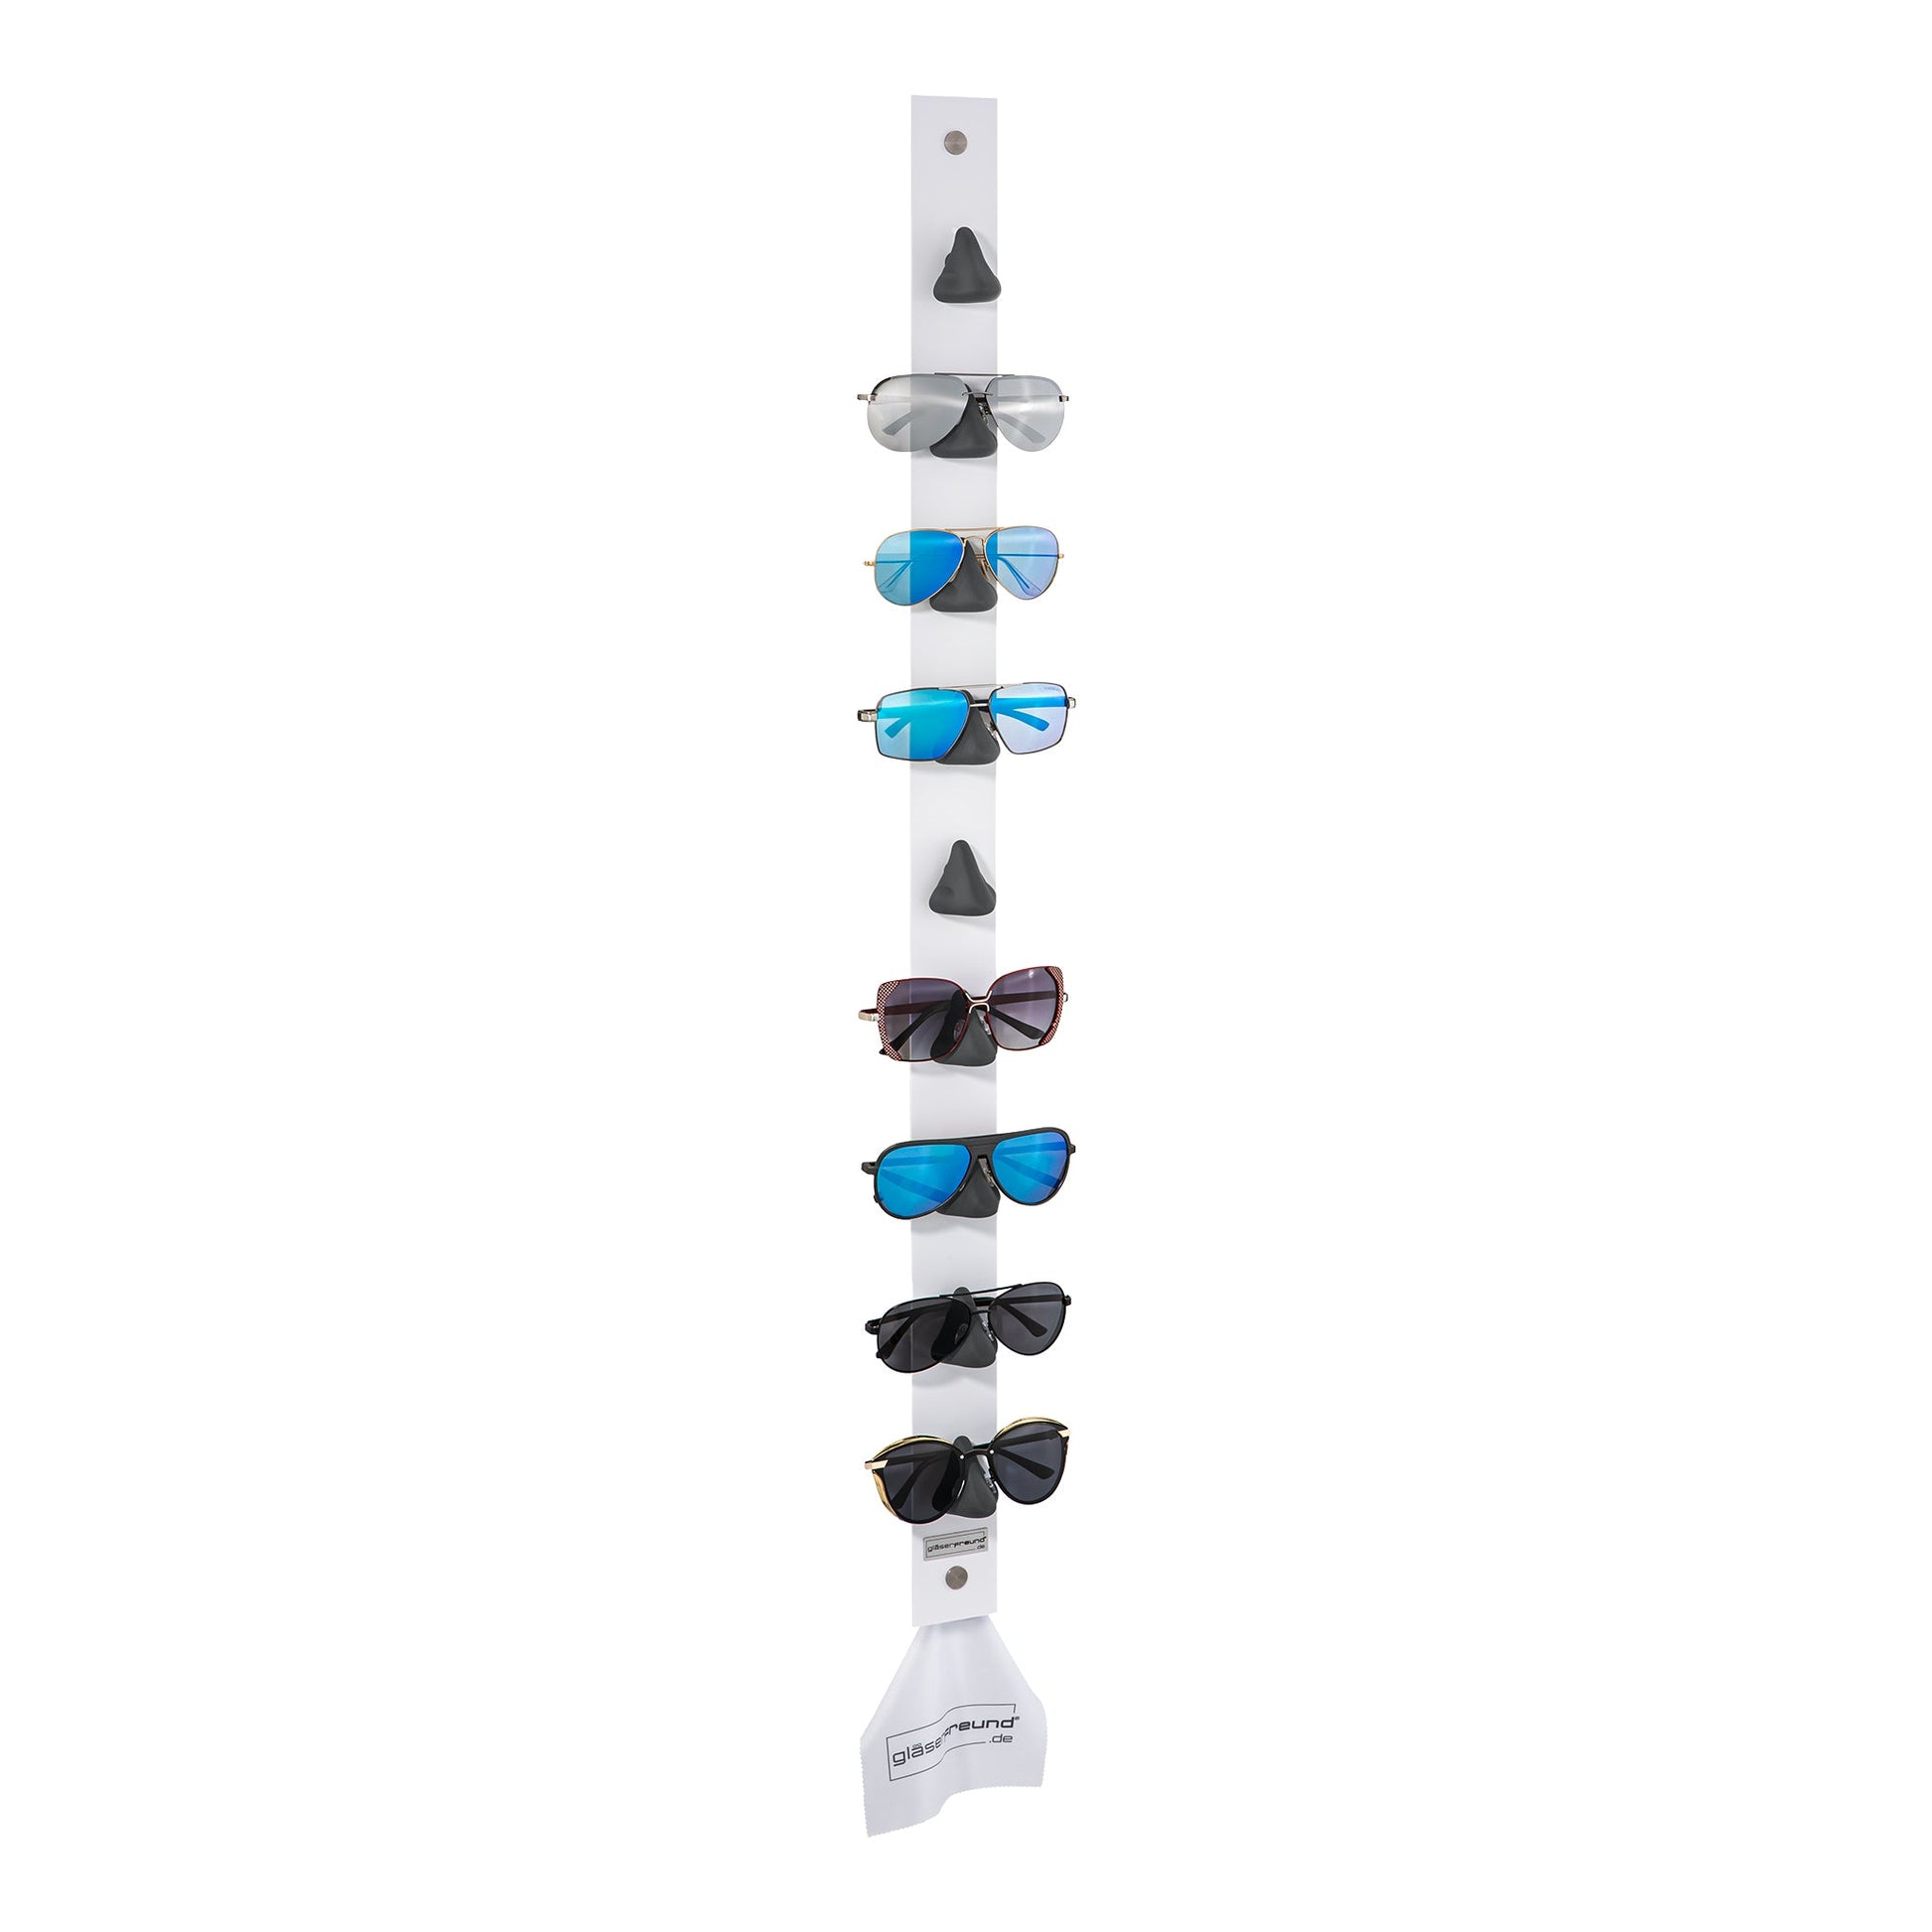 Toni white - Brillenorganizer, Brillenhalter, Brillenhalterung, Brillenregal, Brillenständer, Brillenaufbewahrung, Brillengarderobe, Brillenablage und Brillengarage